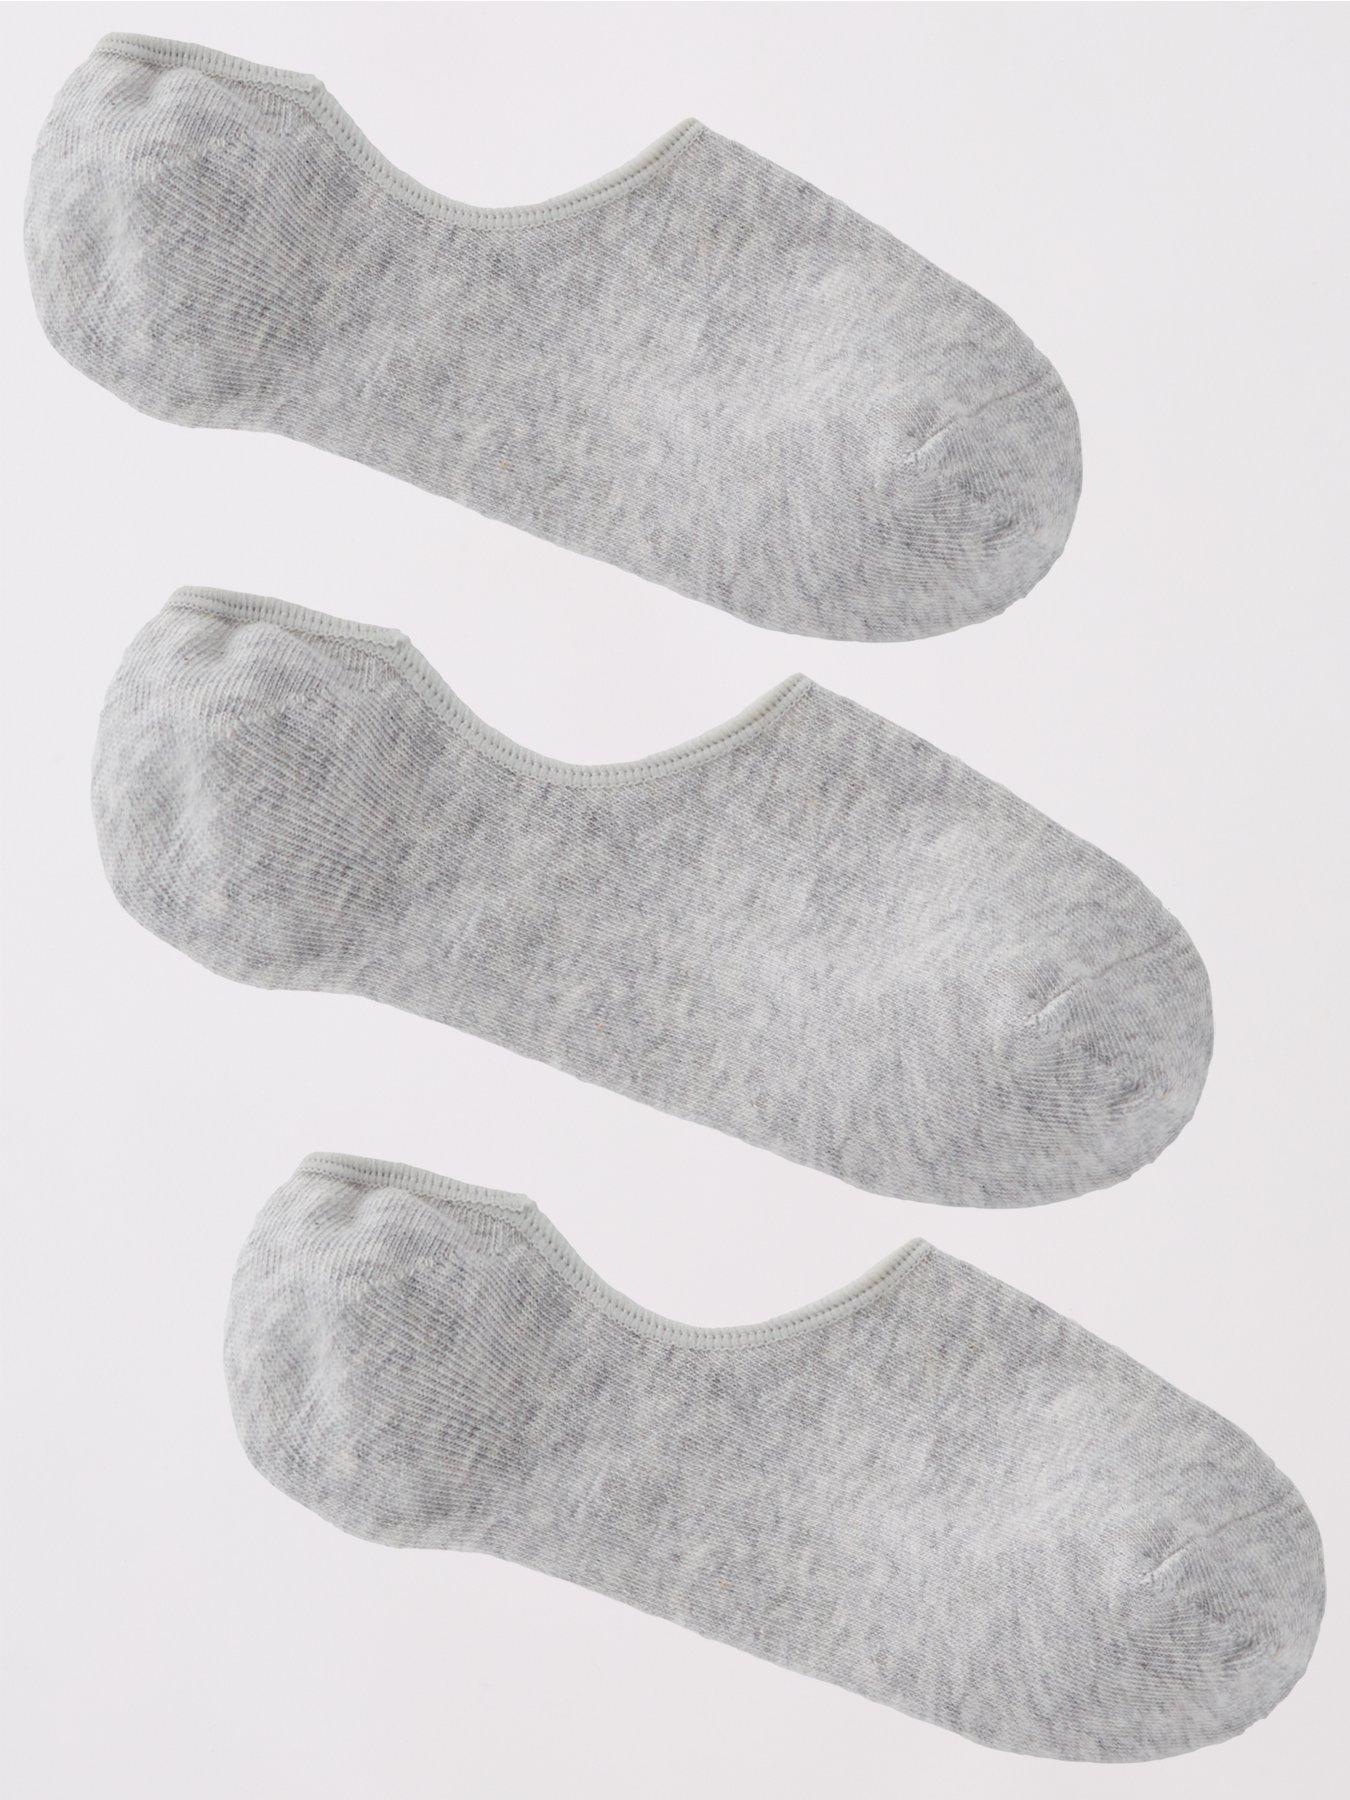 Multi Color Stripe Black White 2In1 Liner Socks - Men Socks